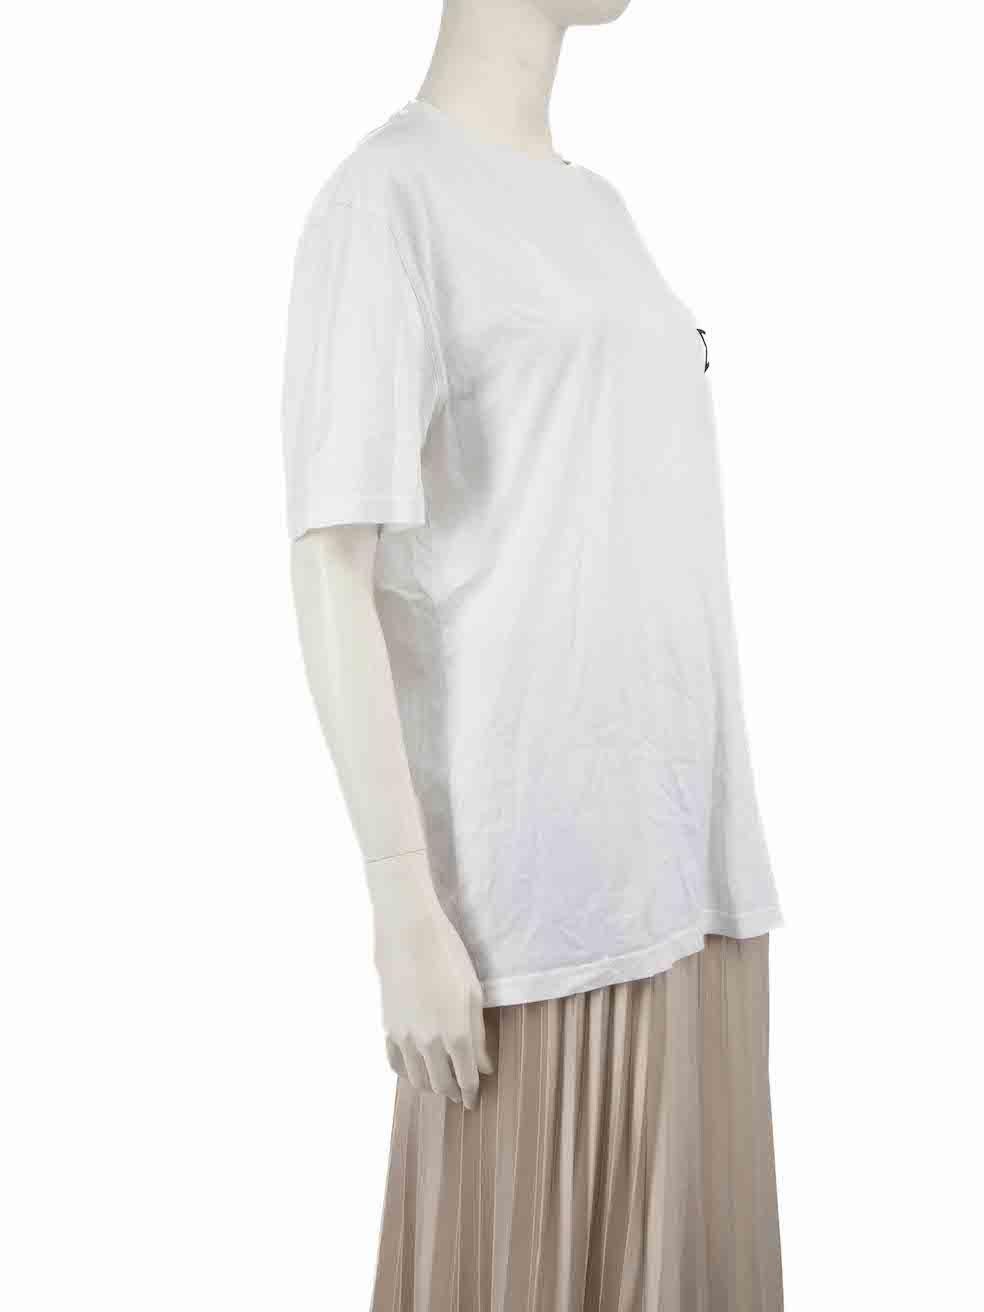 CONDIT ist sehr gut. Kaum sichtbare Abnutzungserscheinungen am T-Shirt sind bei diesem gebrauchten Givenchy-Designer-Wiederverkaufsartikel zu erkennen.
 
 
 
 Einzelheiten
 
 
 Weiß
 
 Baumwolle
 
 T-shirt
 
 Schwarzer Sterndruck
 
